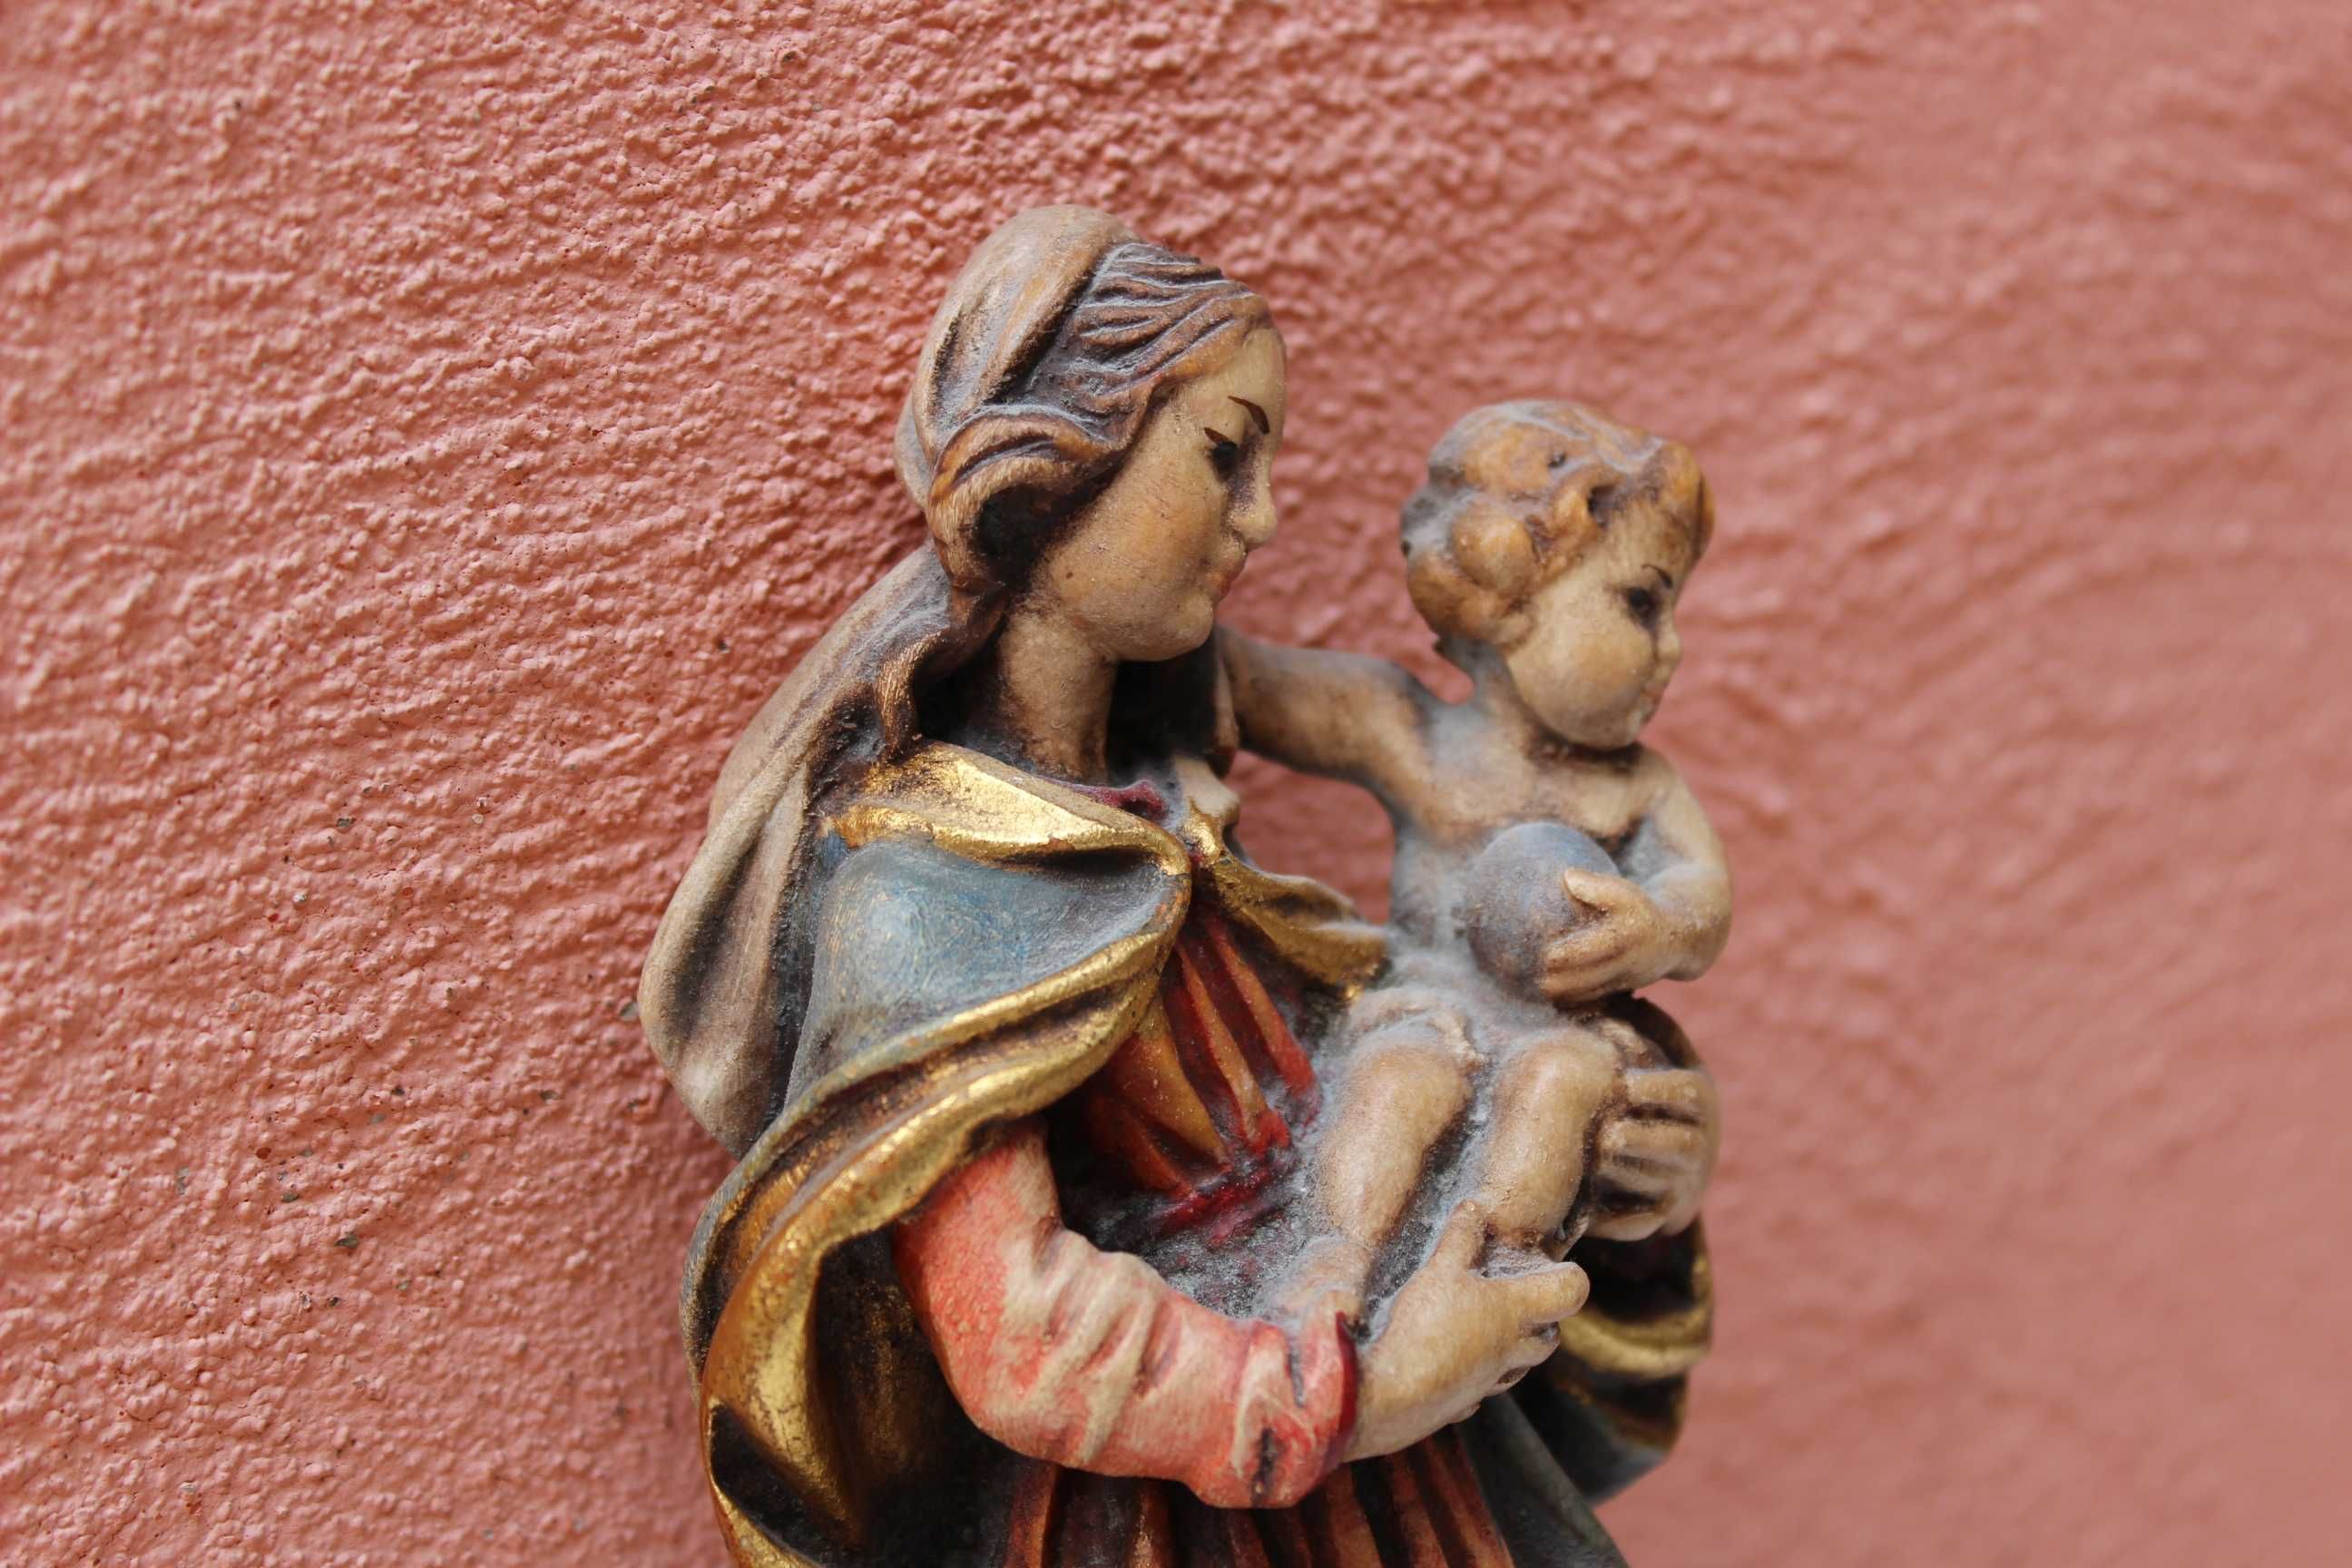 Sculptura/icoana Maria - Iisus, sculptata in lemn, mijloc sec 20